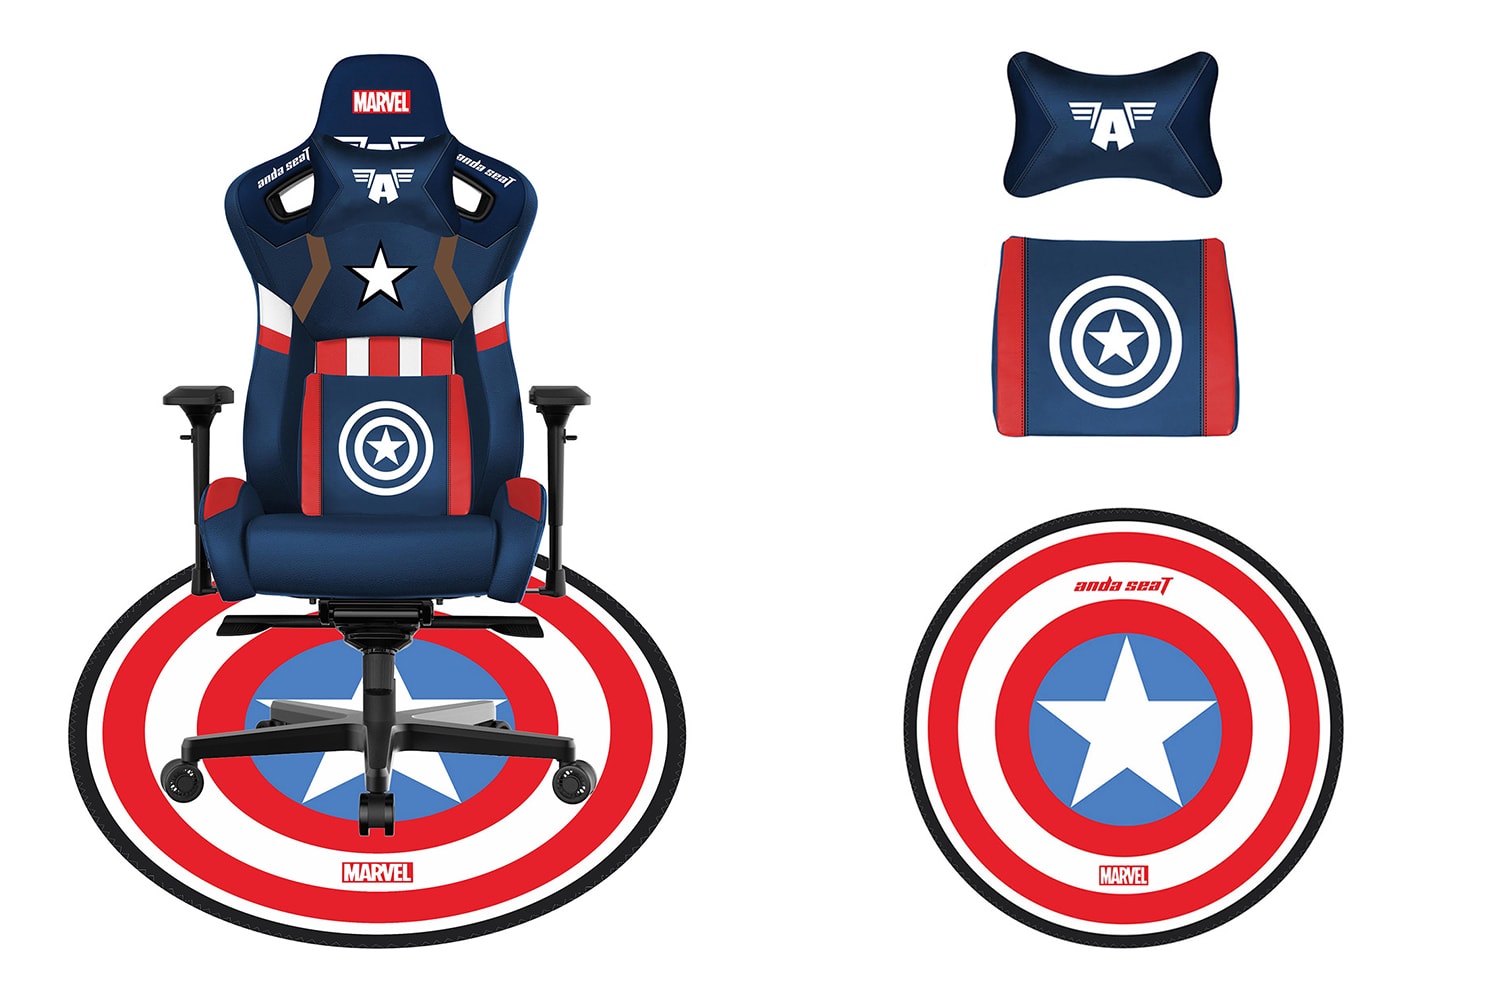 Игровые кресла AndaSeat Disney Marvel Avengers Информация о выпуске Купить Цена Капитан Америка Железный Человек Человек-Паук Человек-Муравей